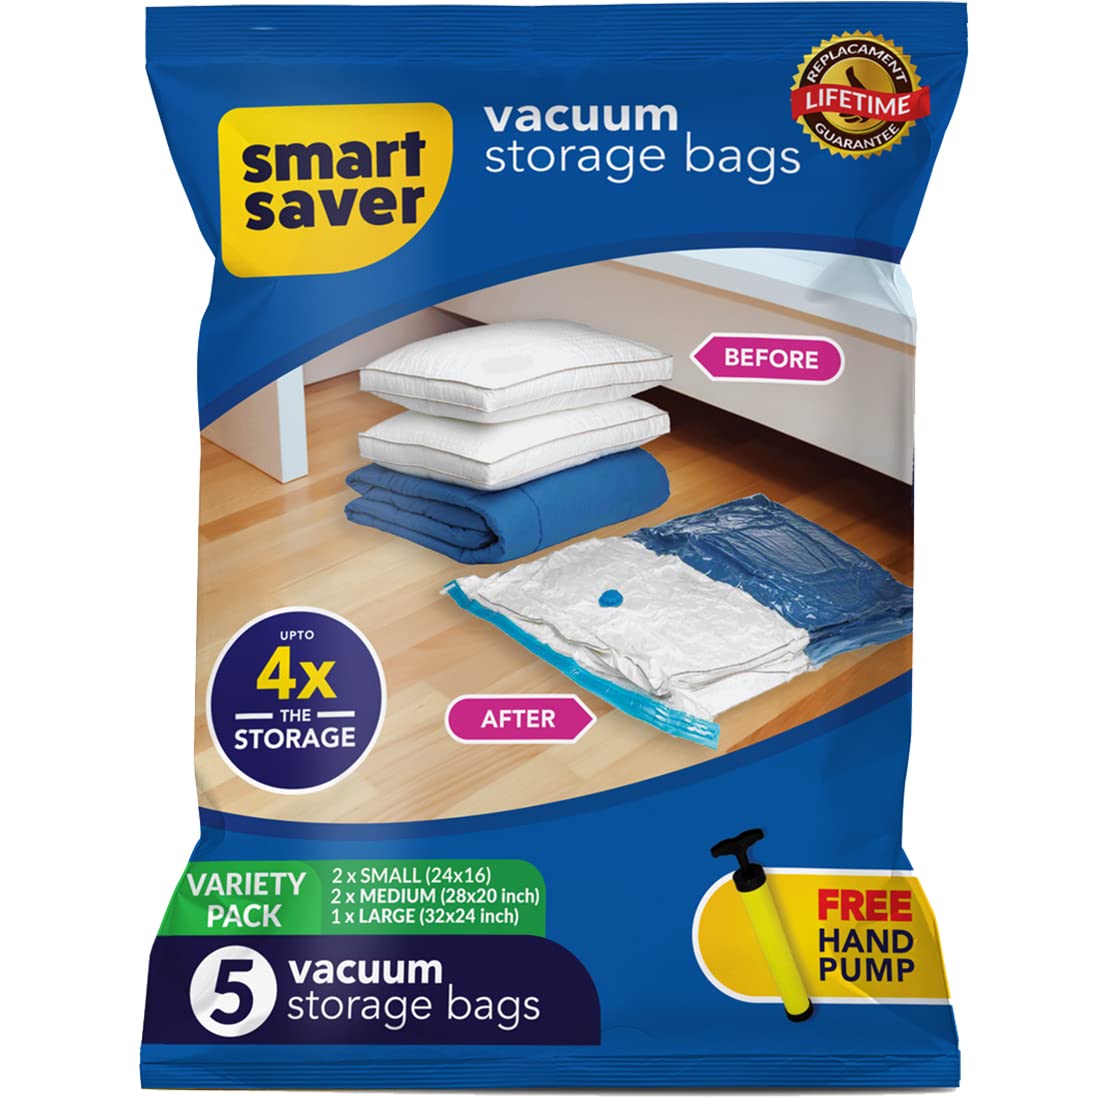 Vacuum storage bag | Designed for storing duvets & blankets